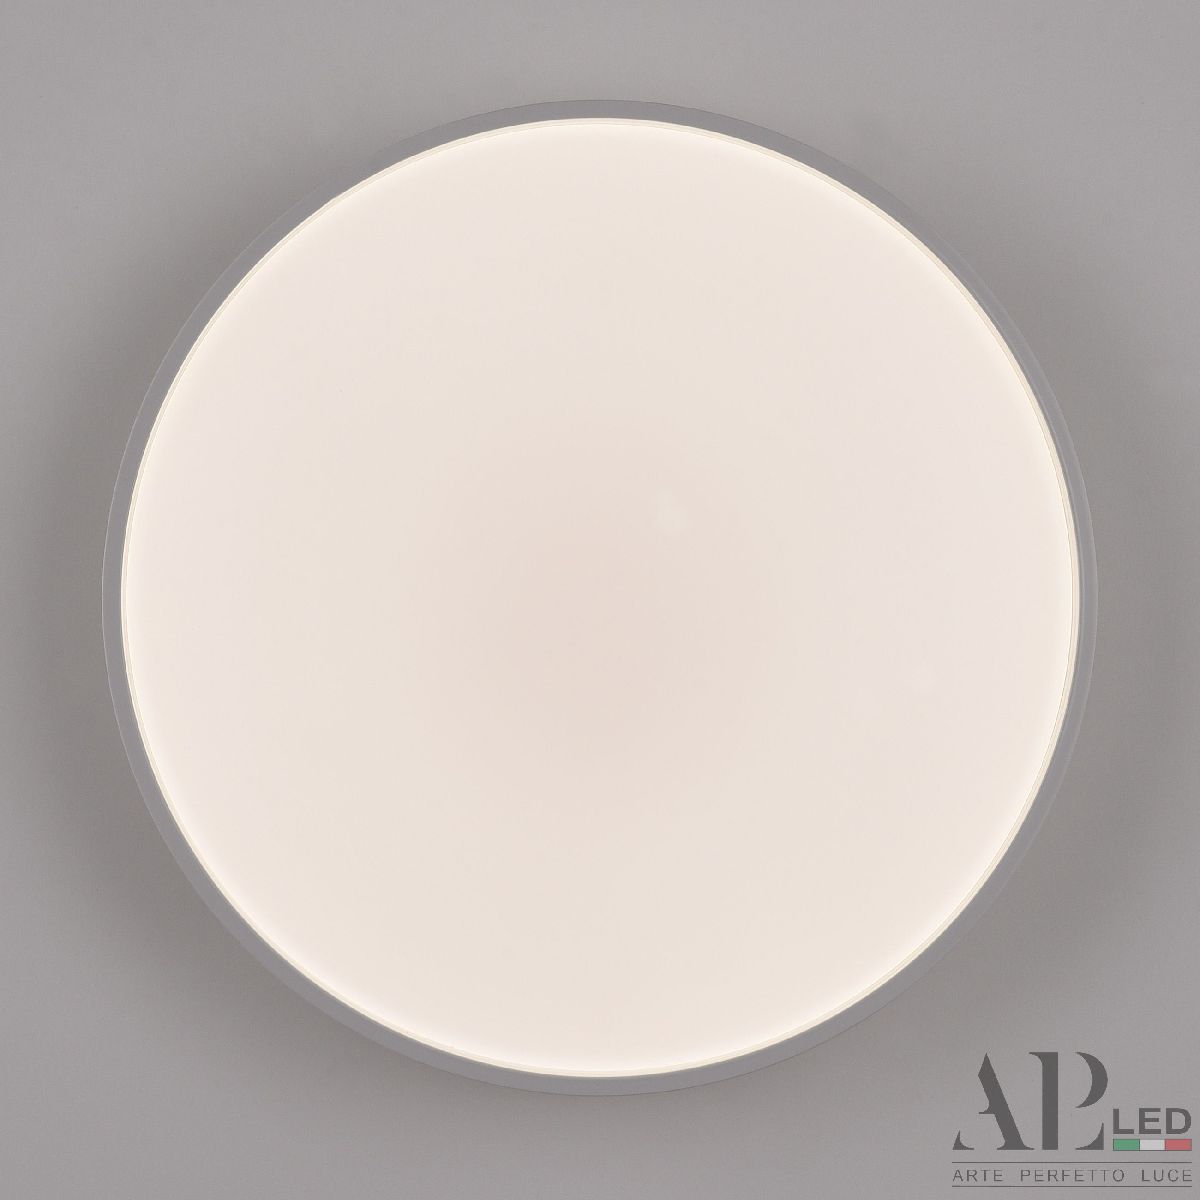 Потолочный светильник Arte Perfetto Luce Toscana 3315.XM302-1-328/18W/4K White TD